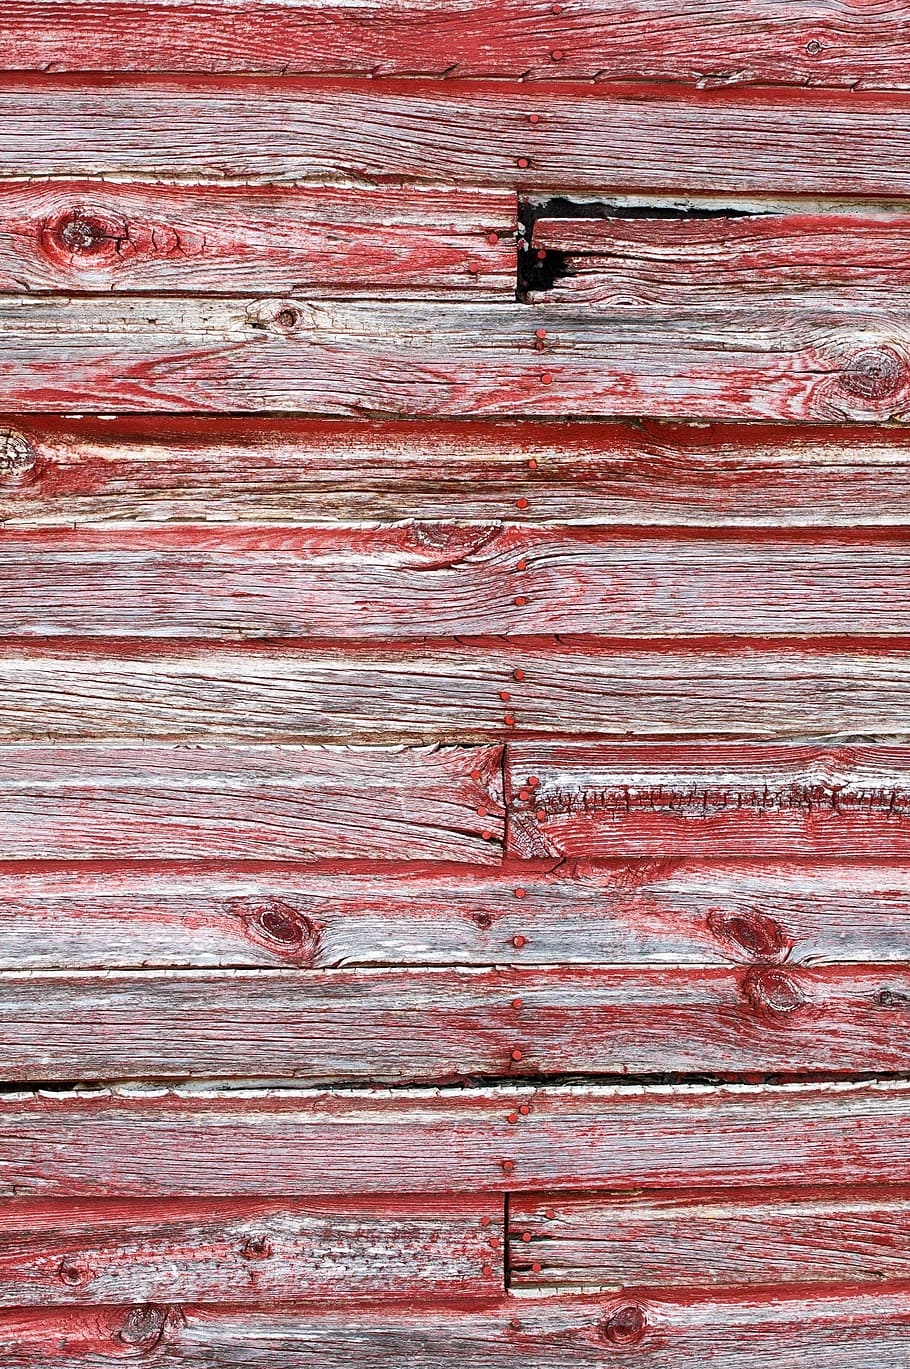 赤, 茶色, 木製, 表面, 納屋の木目テクスチャ, 赤い納屋の木, 木材の背景, 木, テクスチャ, 背景